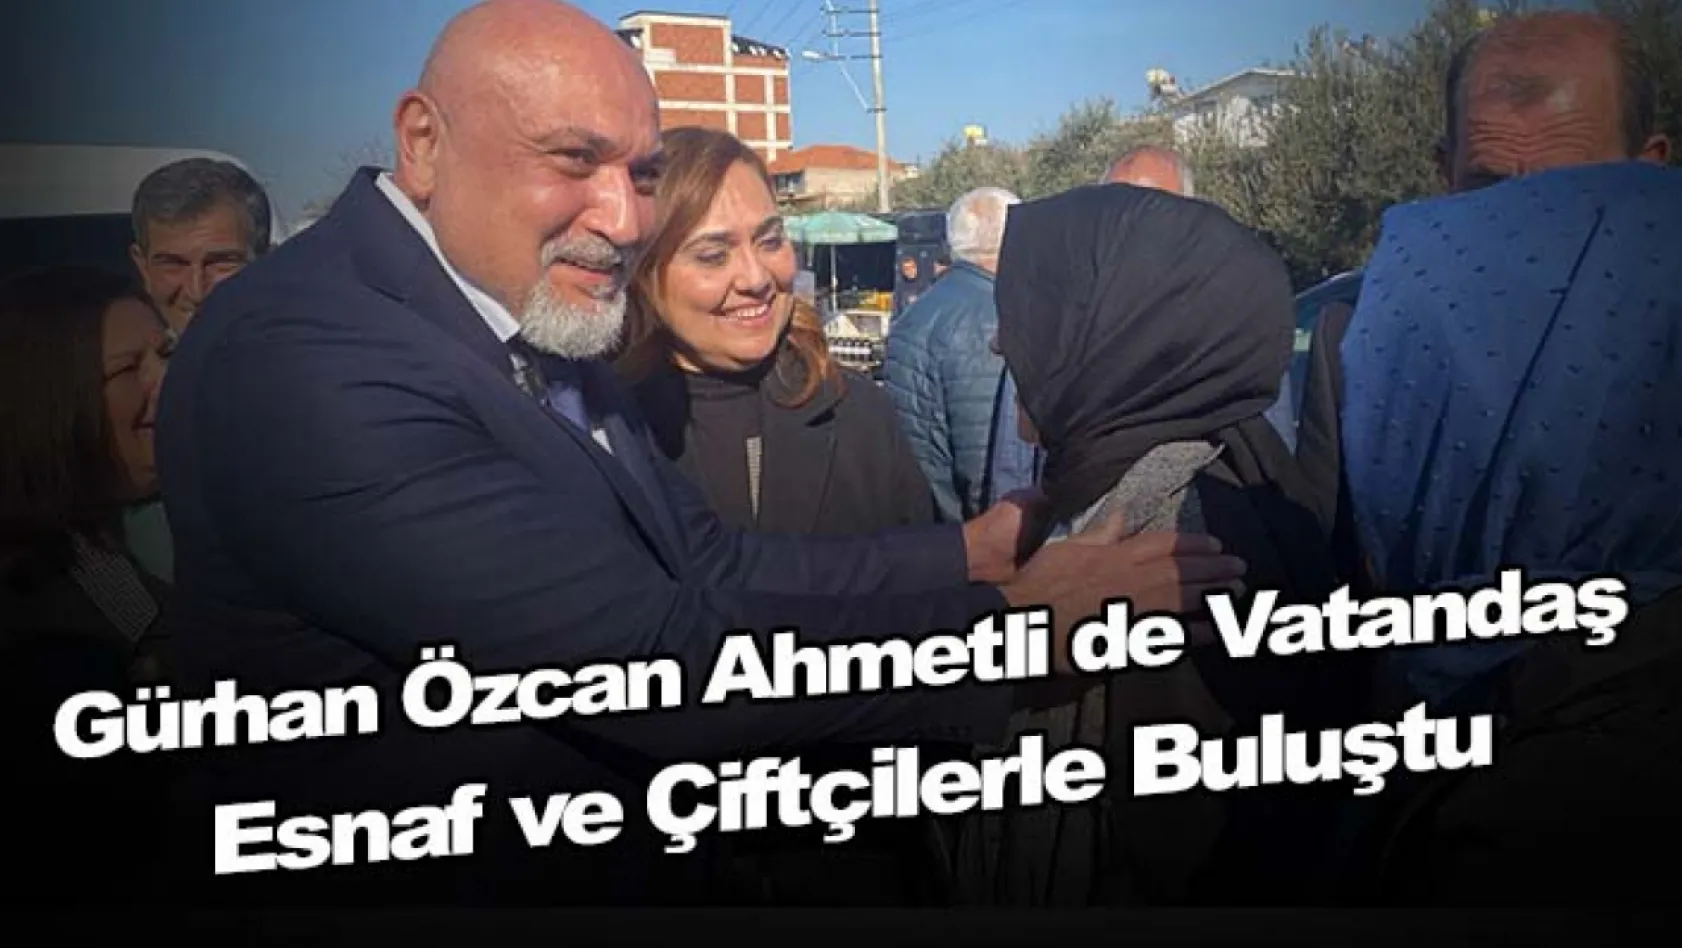 Gürhan Özcan Ahmetli de vatandaş , esnaf ve çiftçilerle buluştu